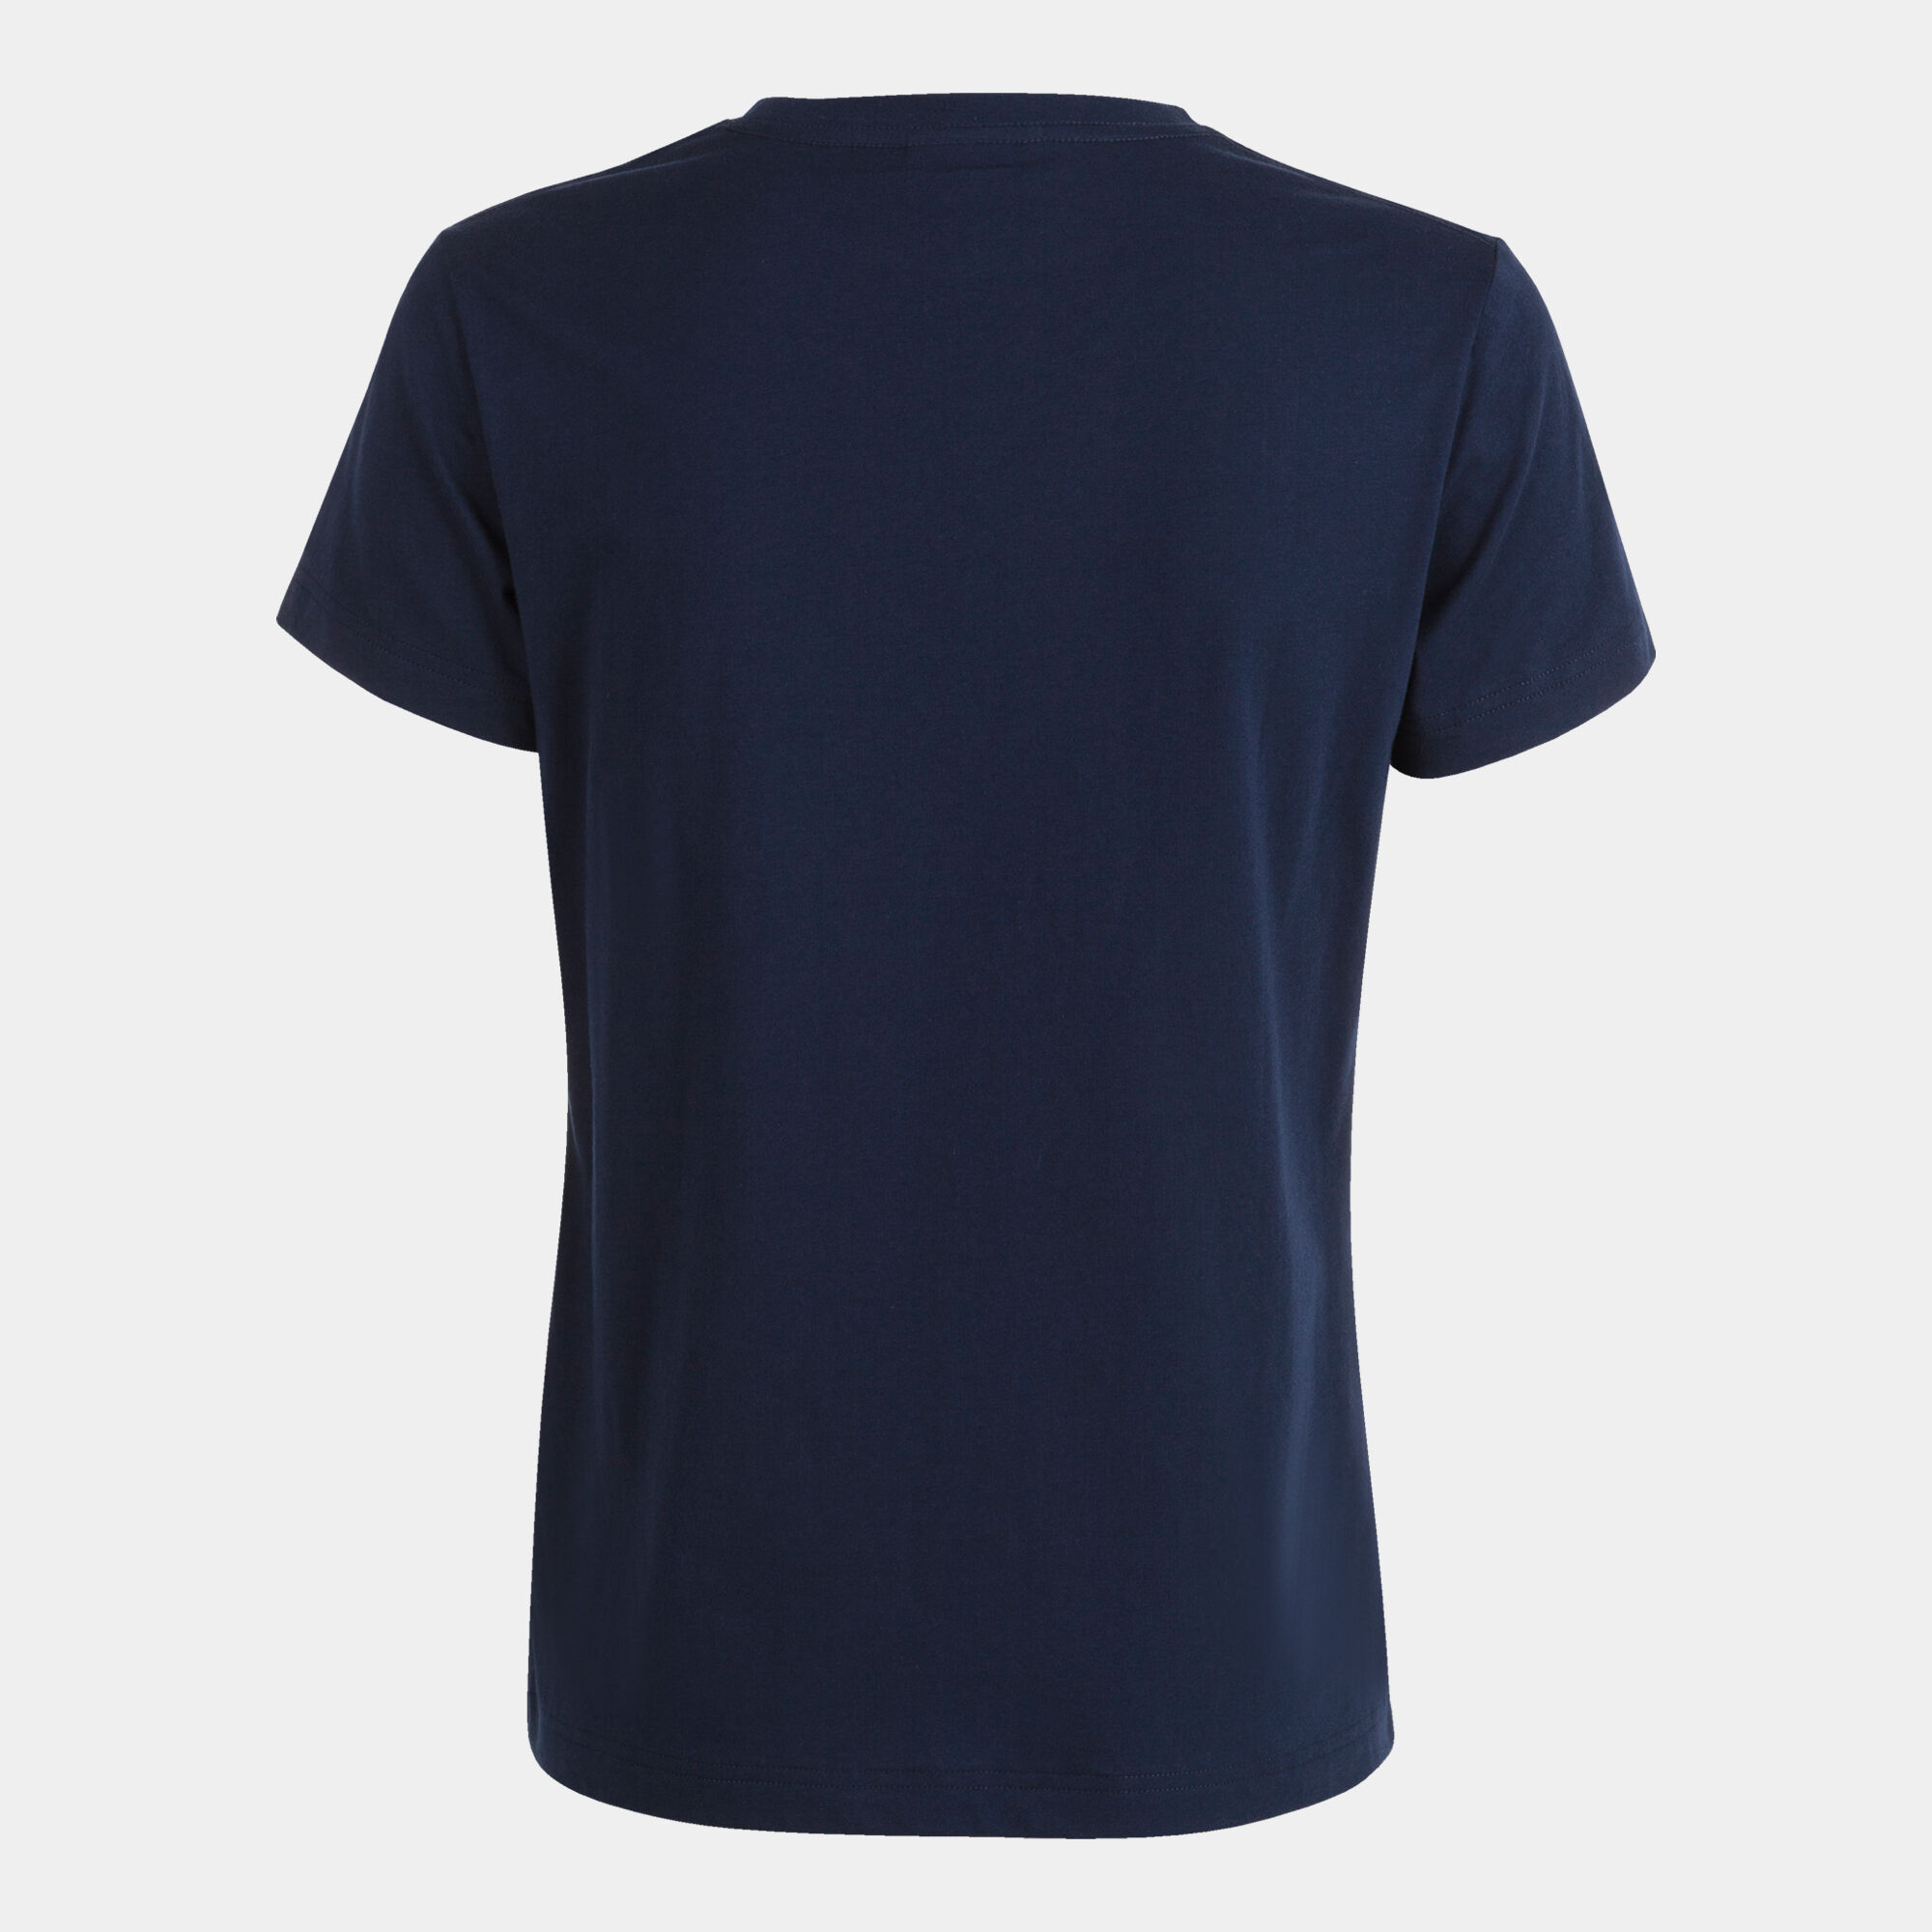 Shirt short sleeve woman Desert navy blue